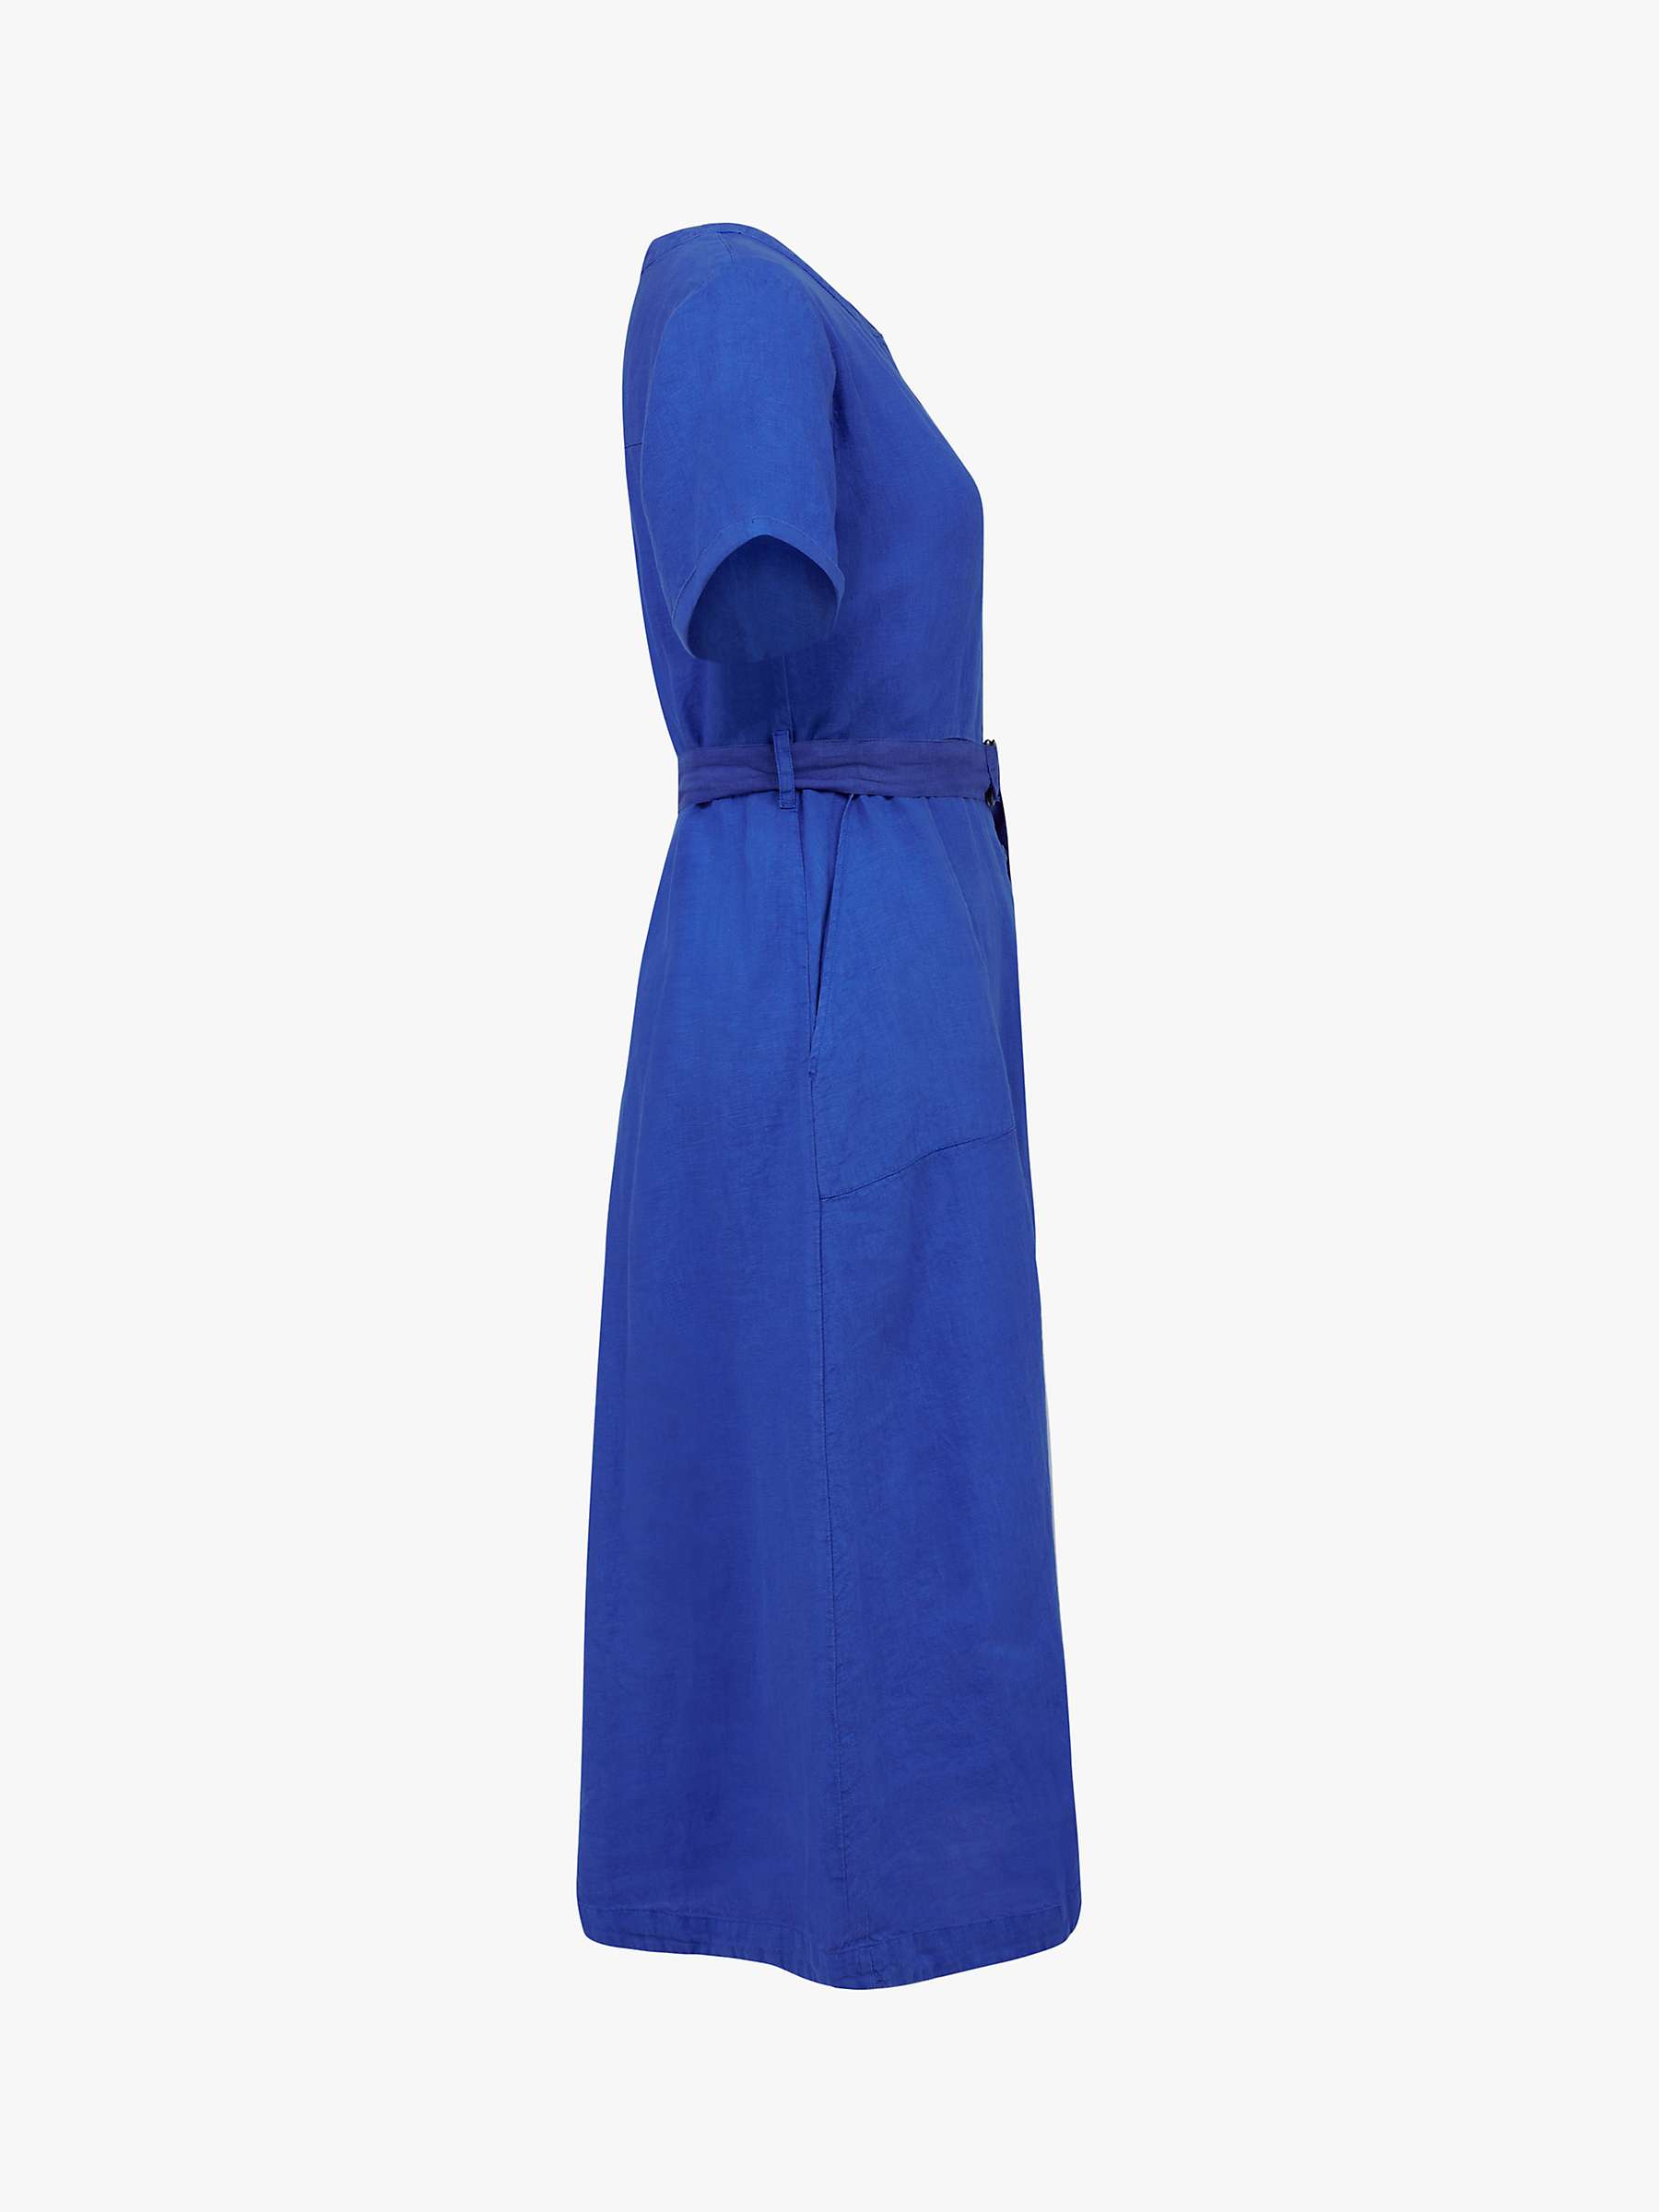 Buy Celtic & Co. Cotton And Linen Button Through Midi Dress, Cobalt Online at johnlewis.com